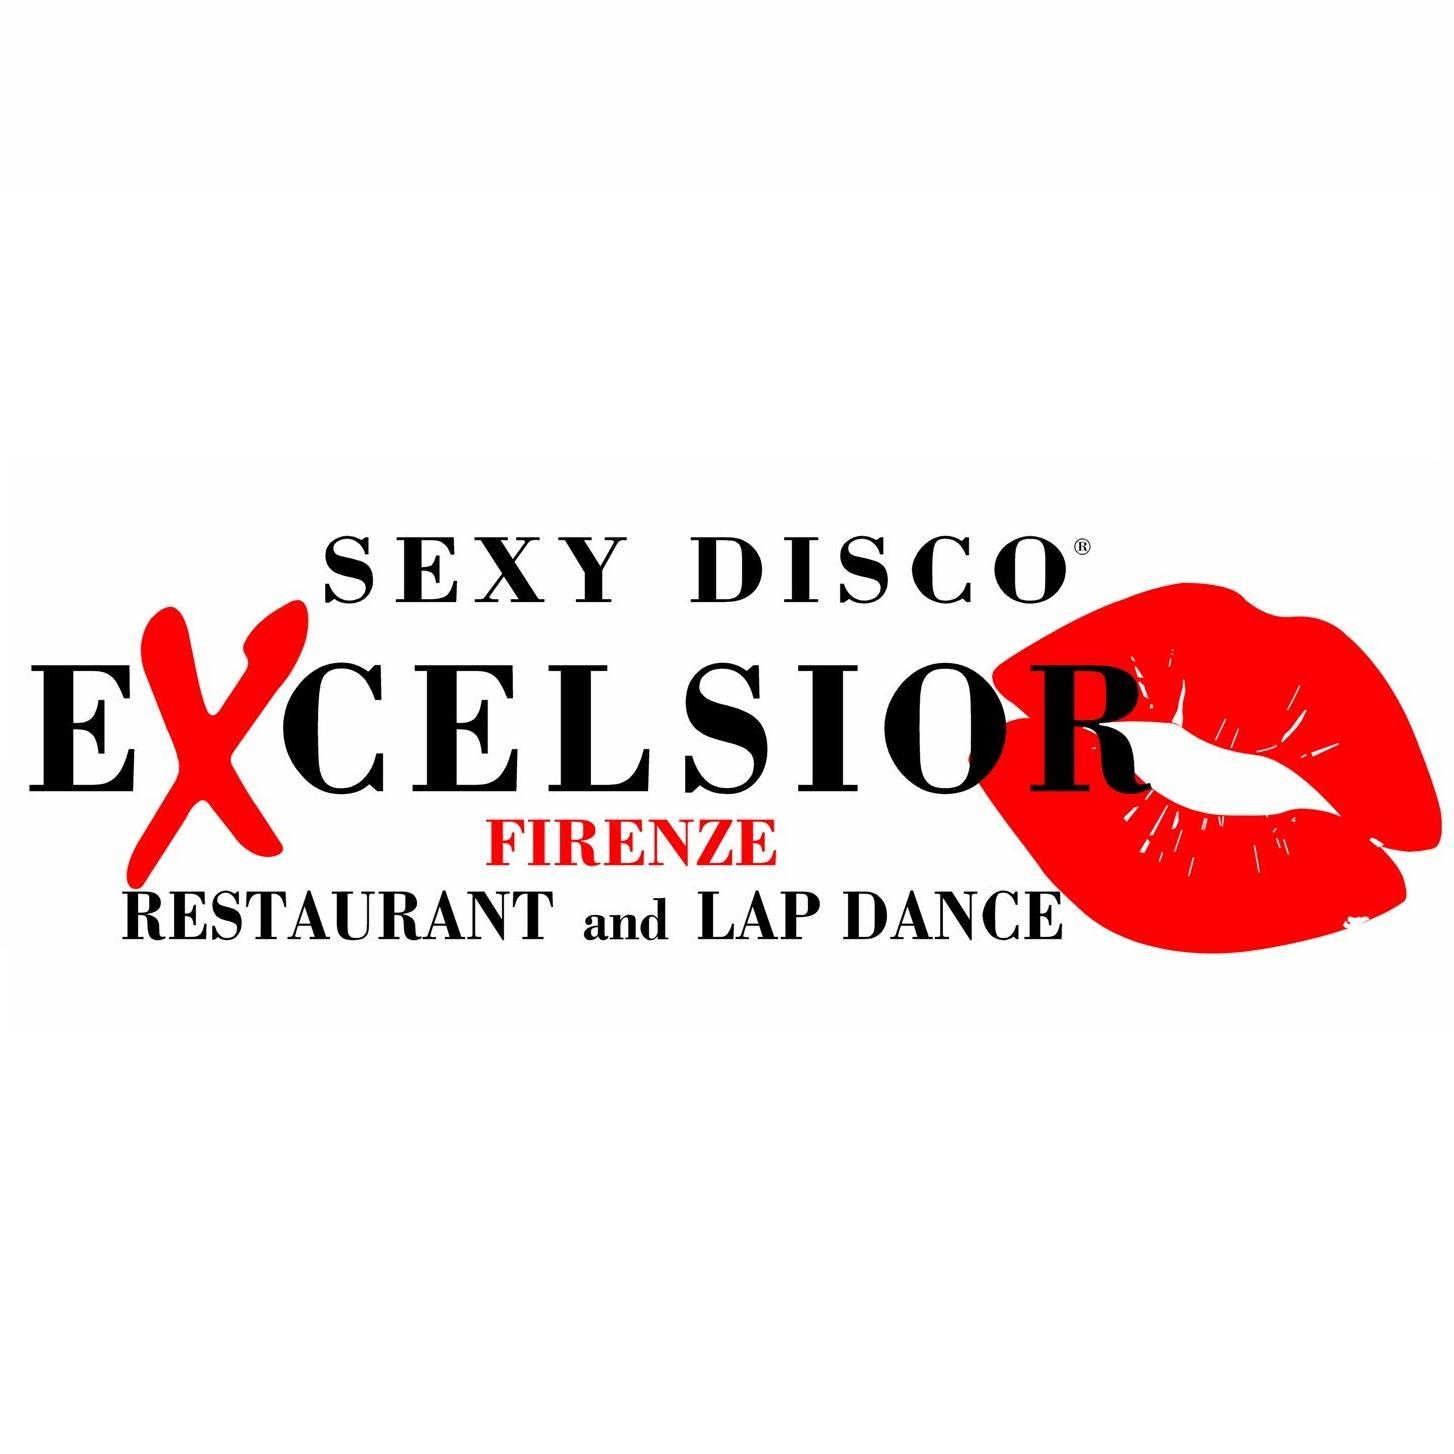 La prima ed unica vera #discoteca erotica con il #ristorante interno. Ogni sera #lapdance e #sexyshow con le nostre 50 #sexygirls e le più famose #pornostar.